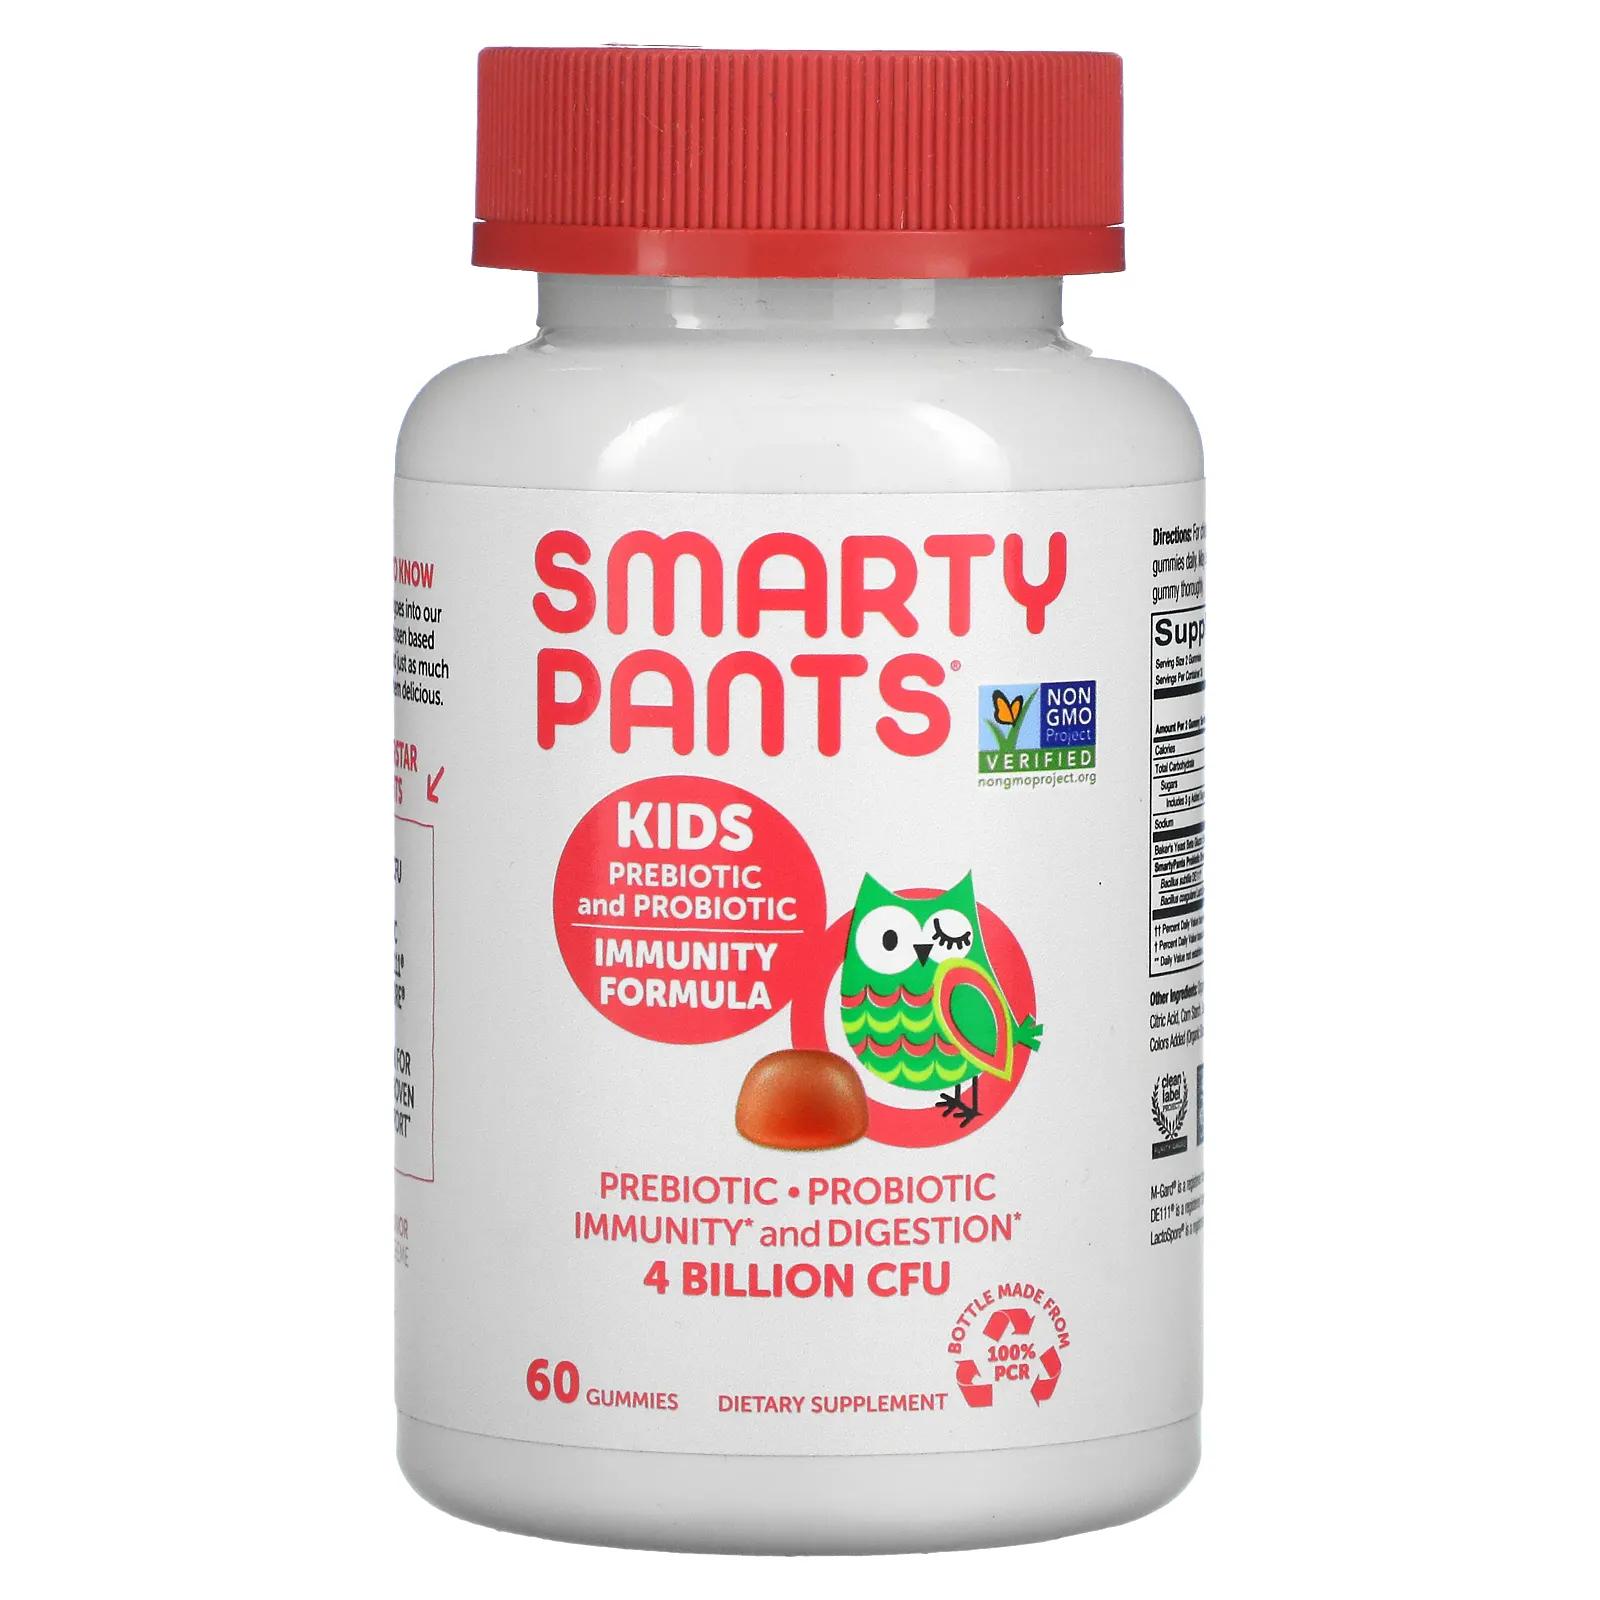 SmartyPants Kids Probiotic Complete клубничный крем 4 миллиарда КОЕ 60 жевательных конфет smartypants kids probiotic complete клубничный крем 4 миллиарда кое 60 жевательных конфет